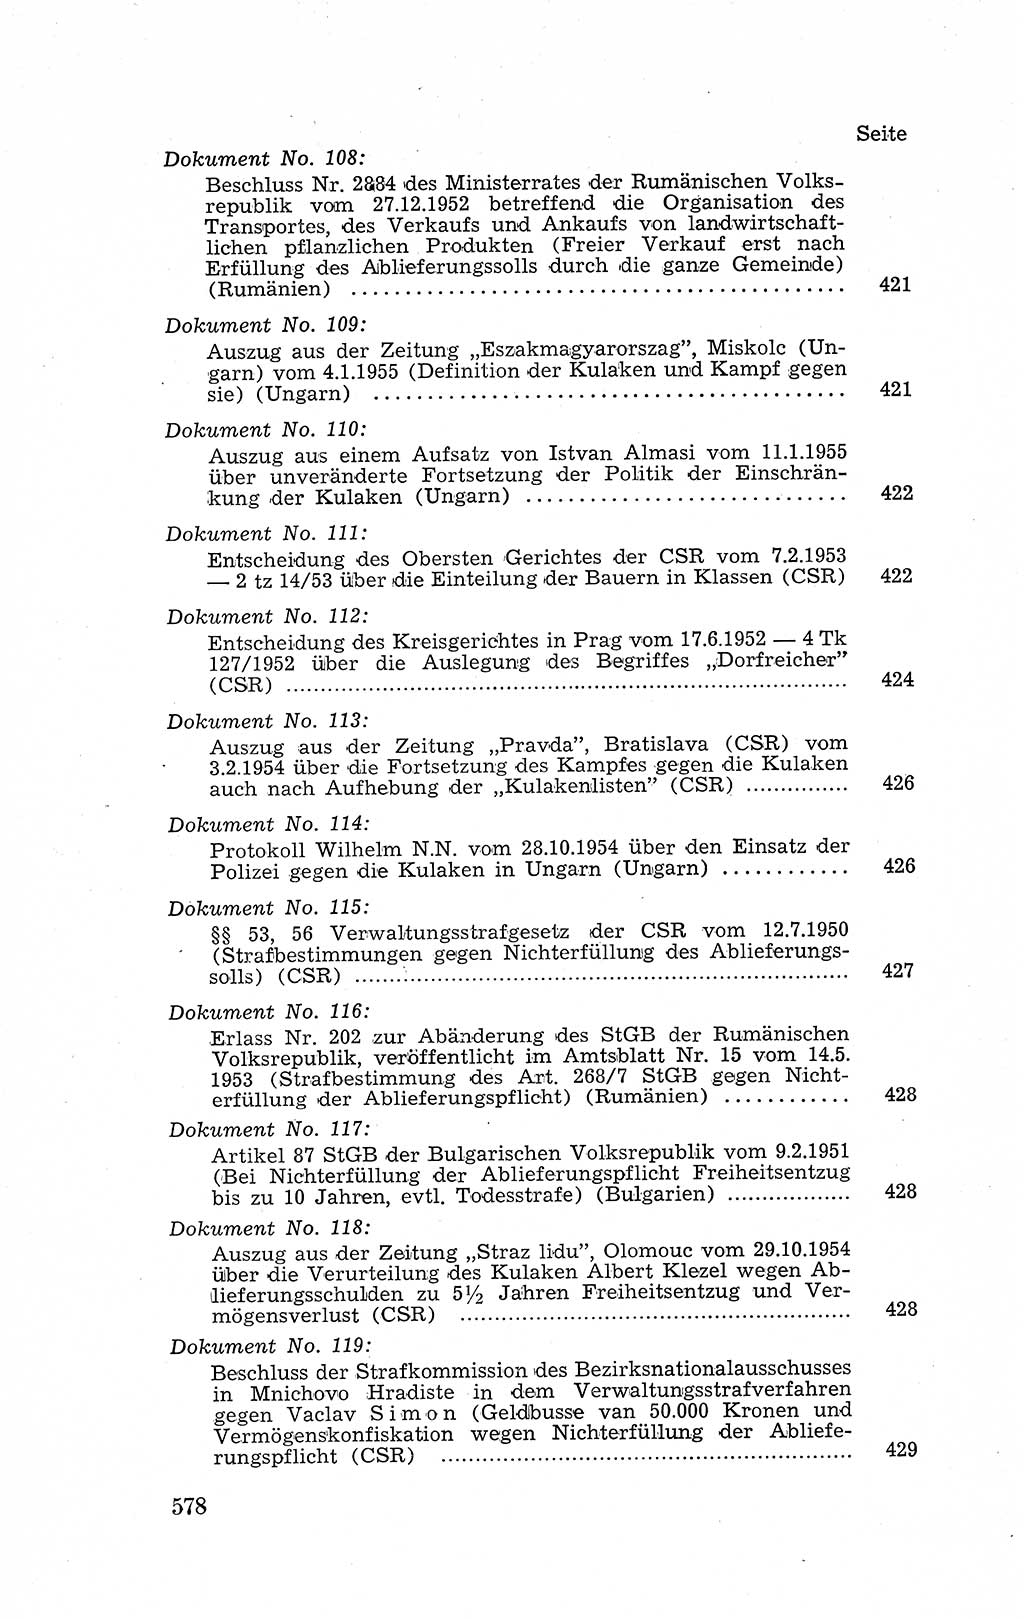 Recht in Fesseln, Dokumente, Internationale Juristen-Kommission [Bundesrepublik Deutschland (BRD)] 1955, Seite 578 (R. Dok. IJK BRD 1955, S. 578)